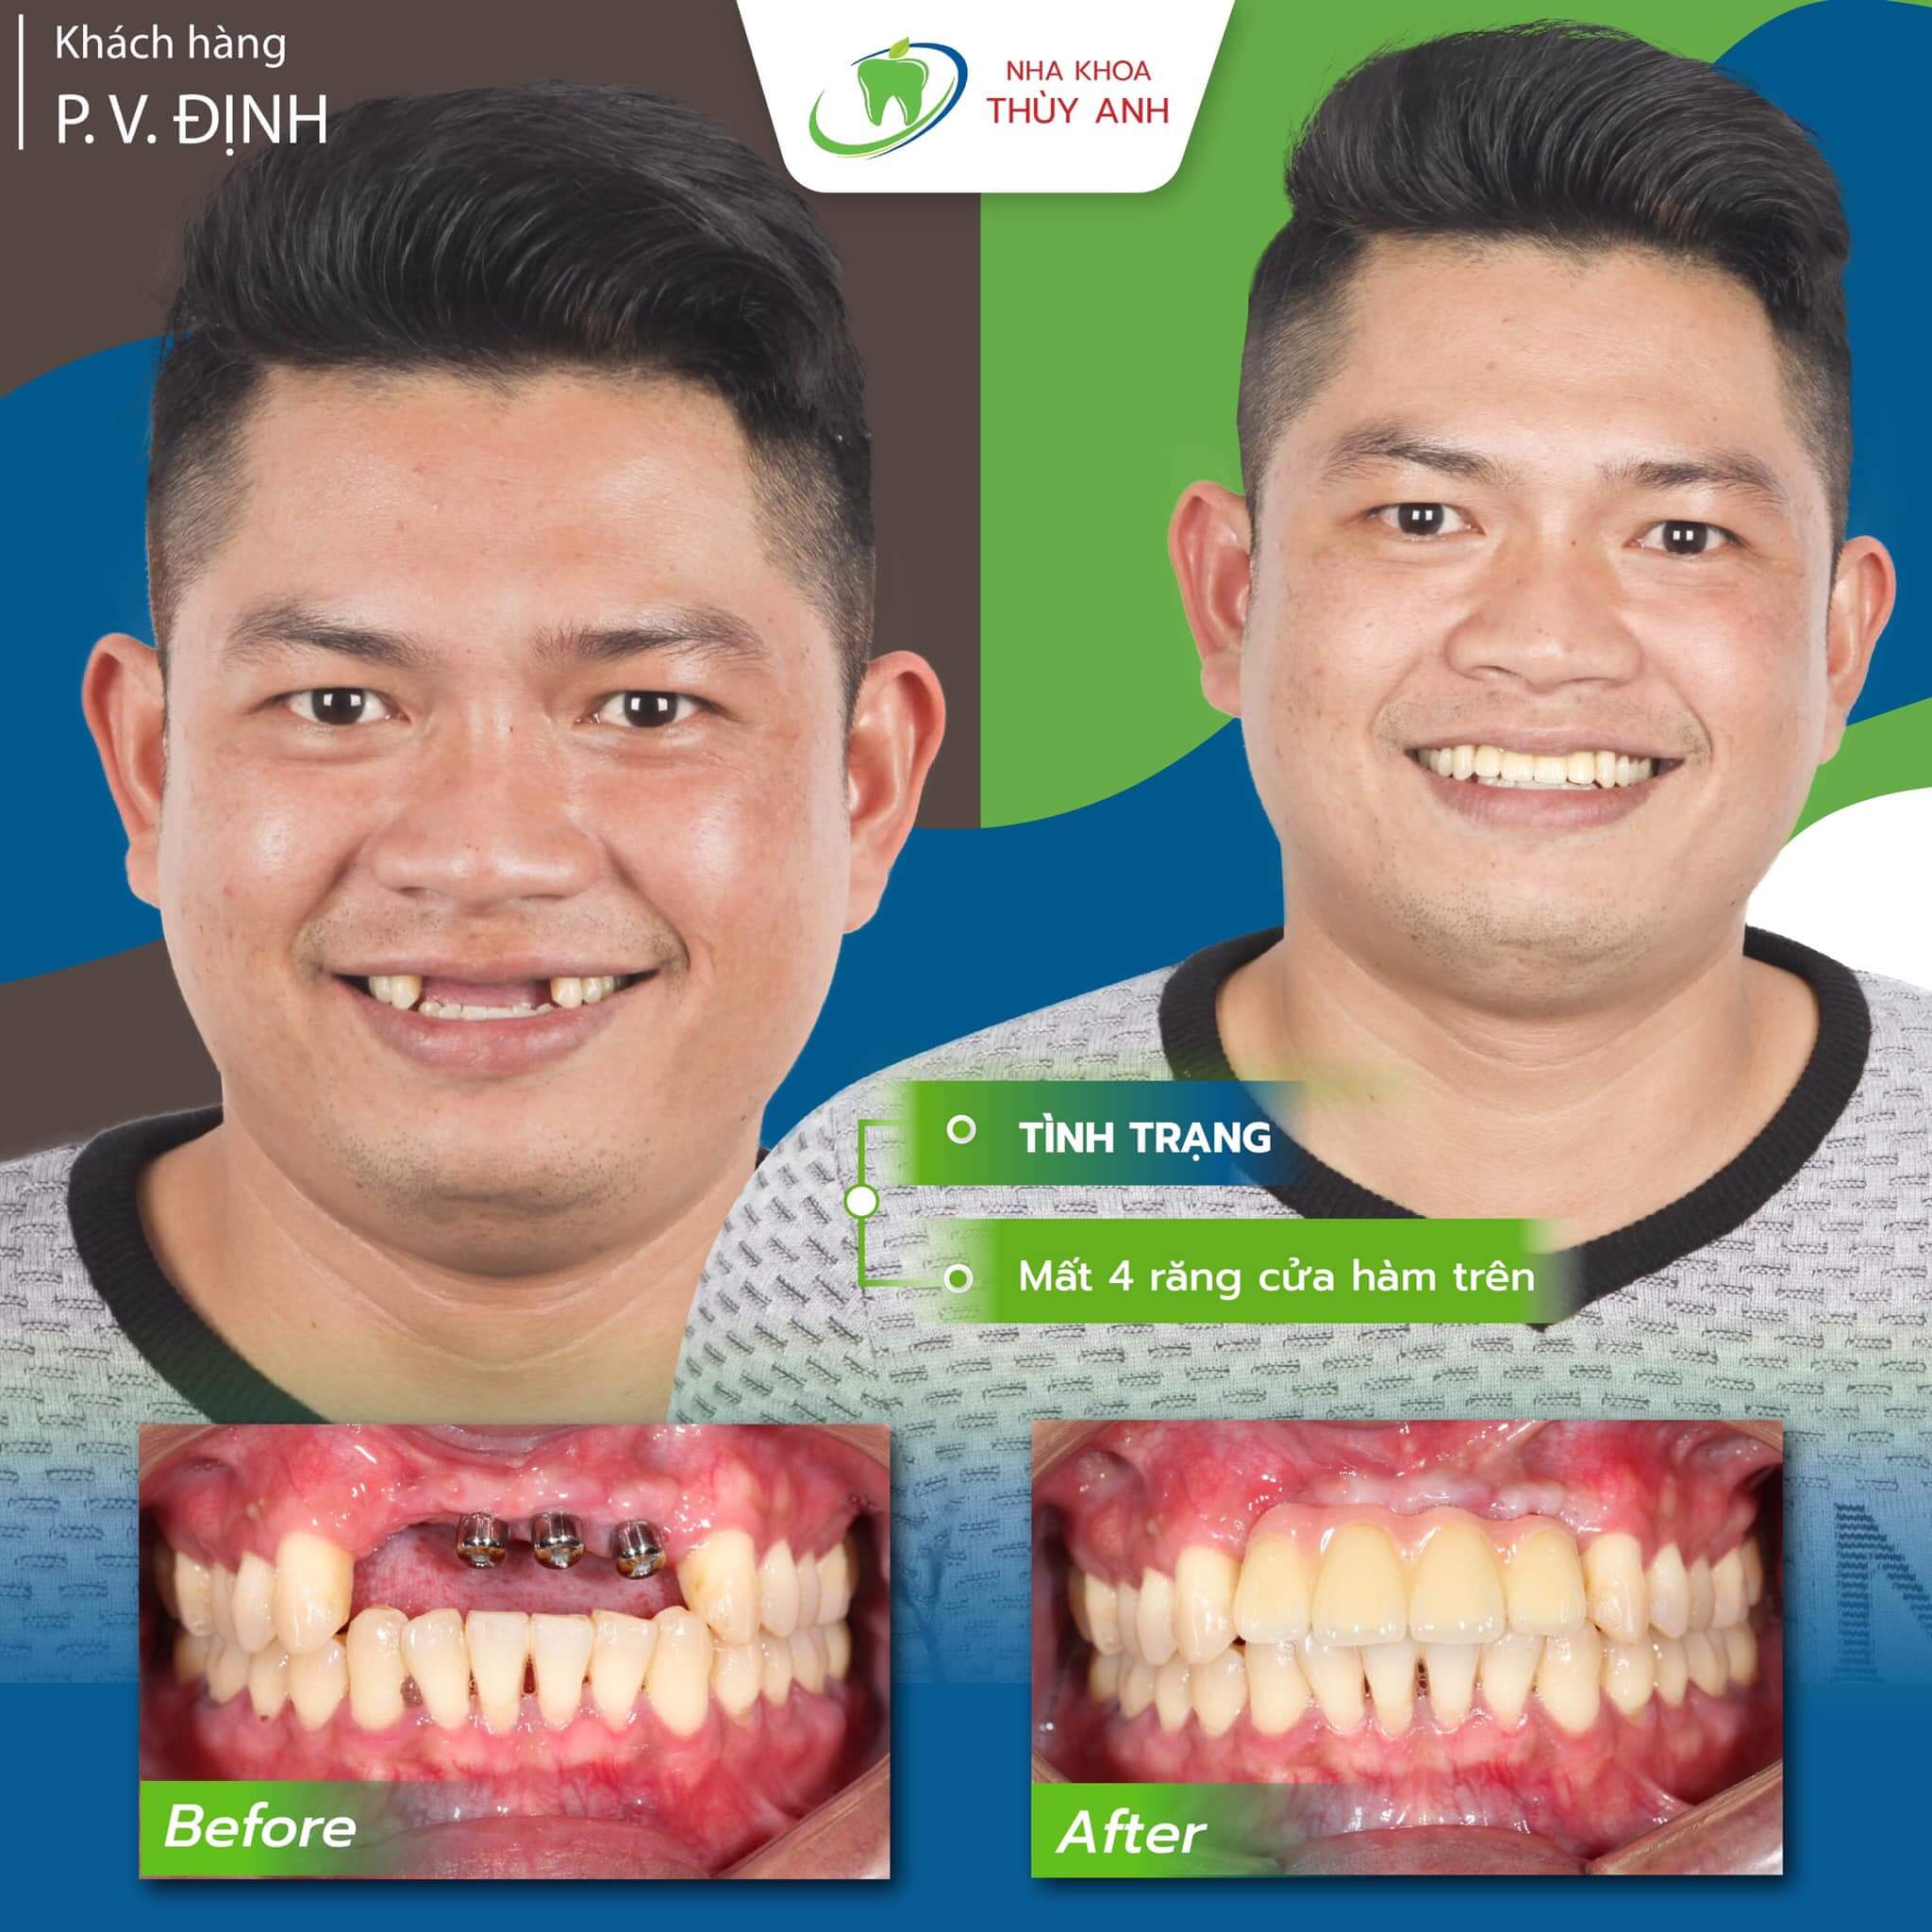 Cấy implant răng cửa giúp bạn khôi phục hàm răng hoàn hảo như trước khi bị mất răng. Bộ ảnh trước và sau khi cấy implant sẽ thuyết phục bạn tin rằng cách tốt nhất để có được nụ cười tươi mới lại là điều trị này.